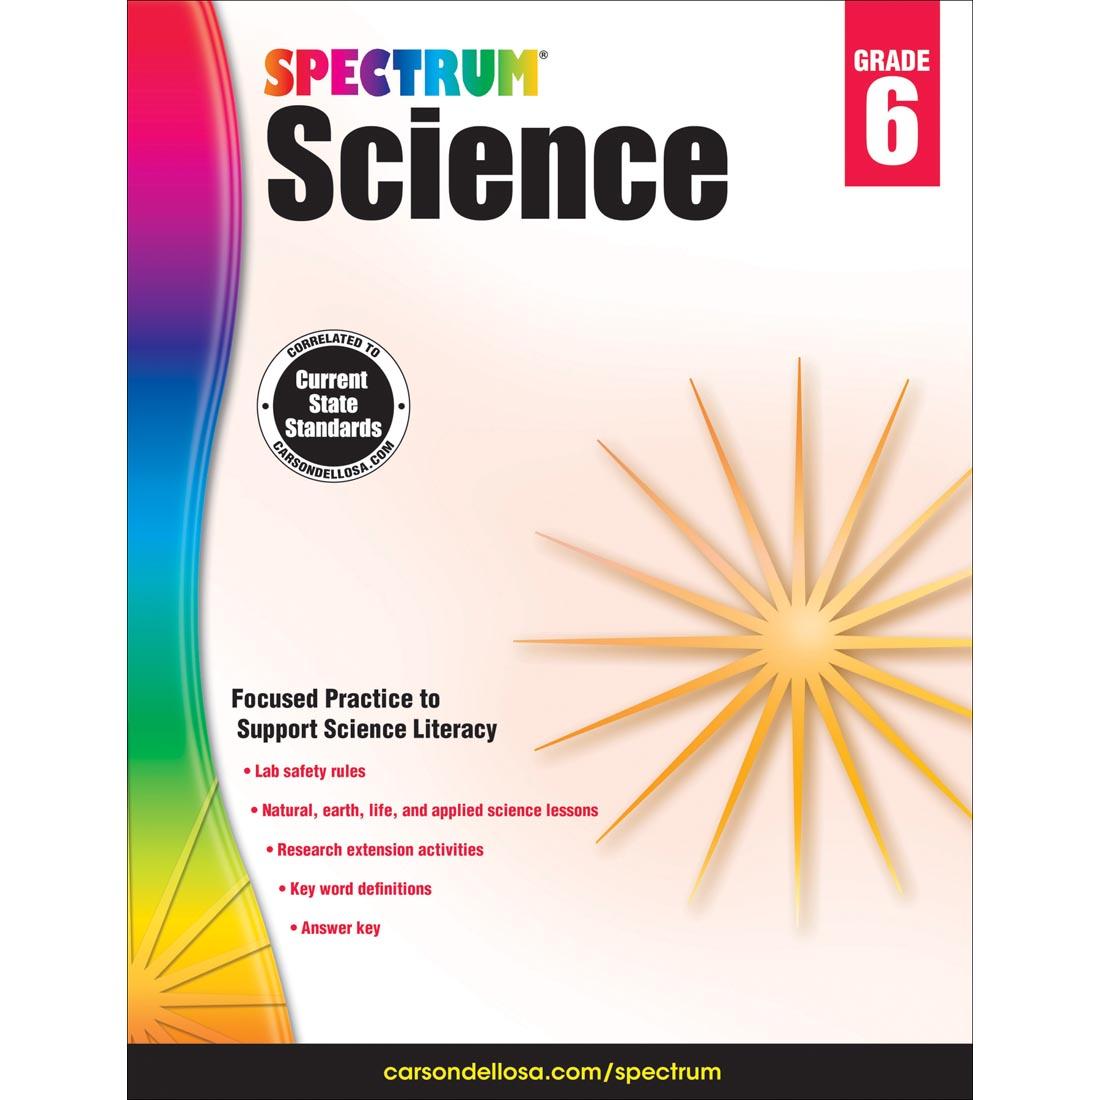 Spectrum Science by Carson Dellosa Grade 6